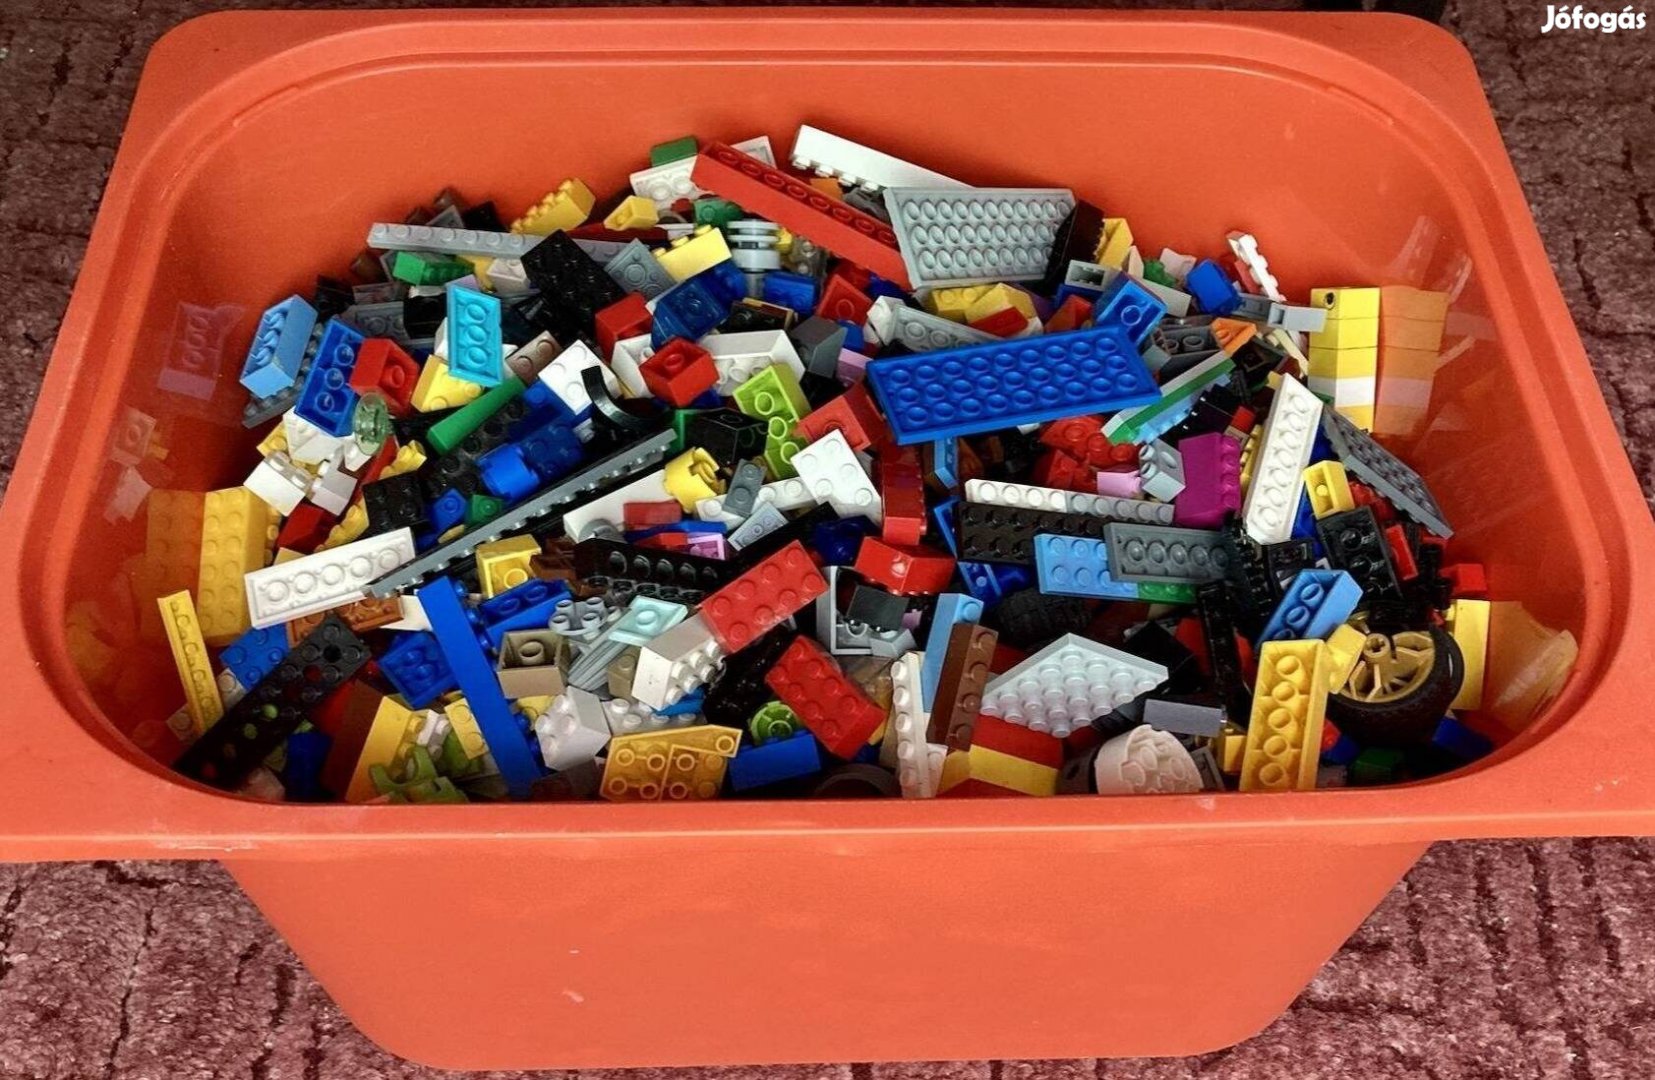 Ikeás rekesznyi Lego Classic darabok. 5 kg